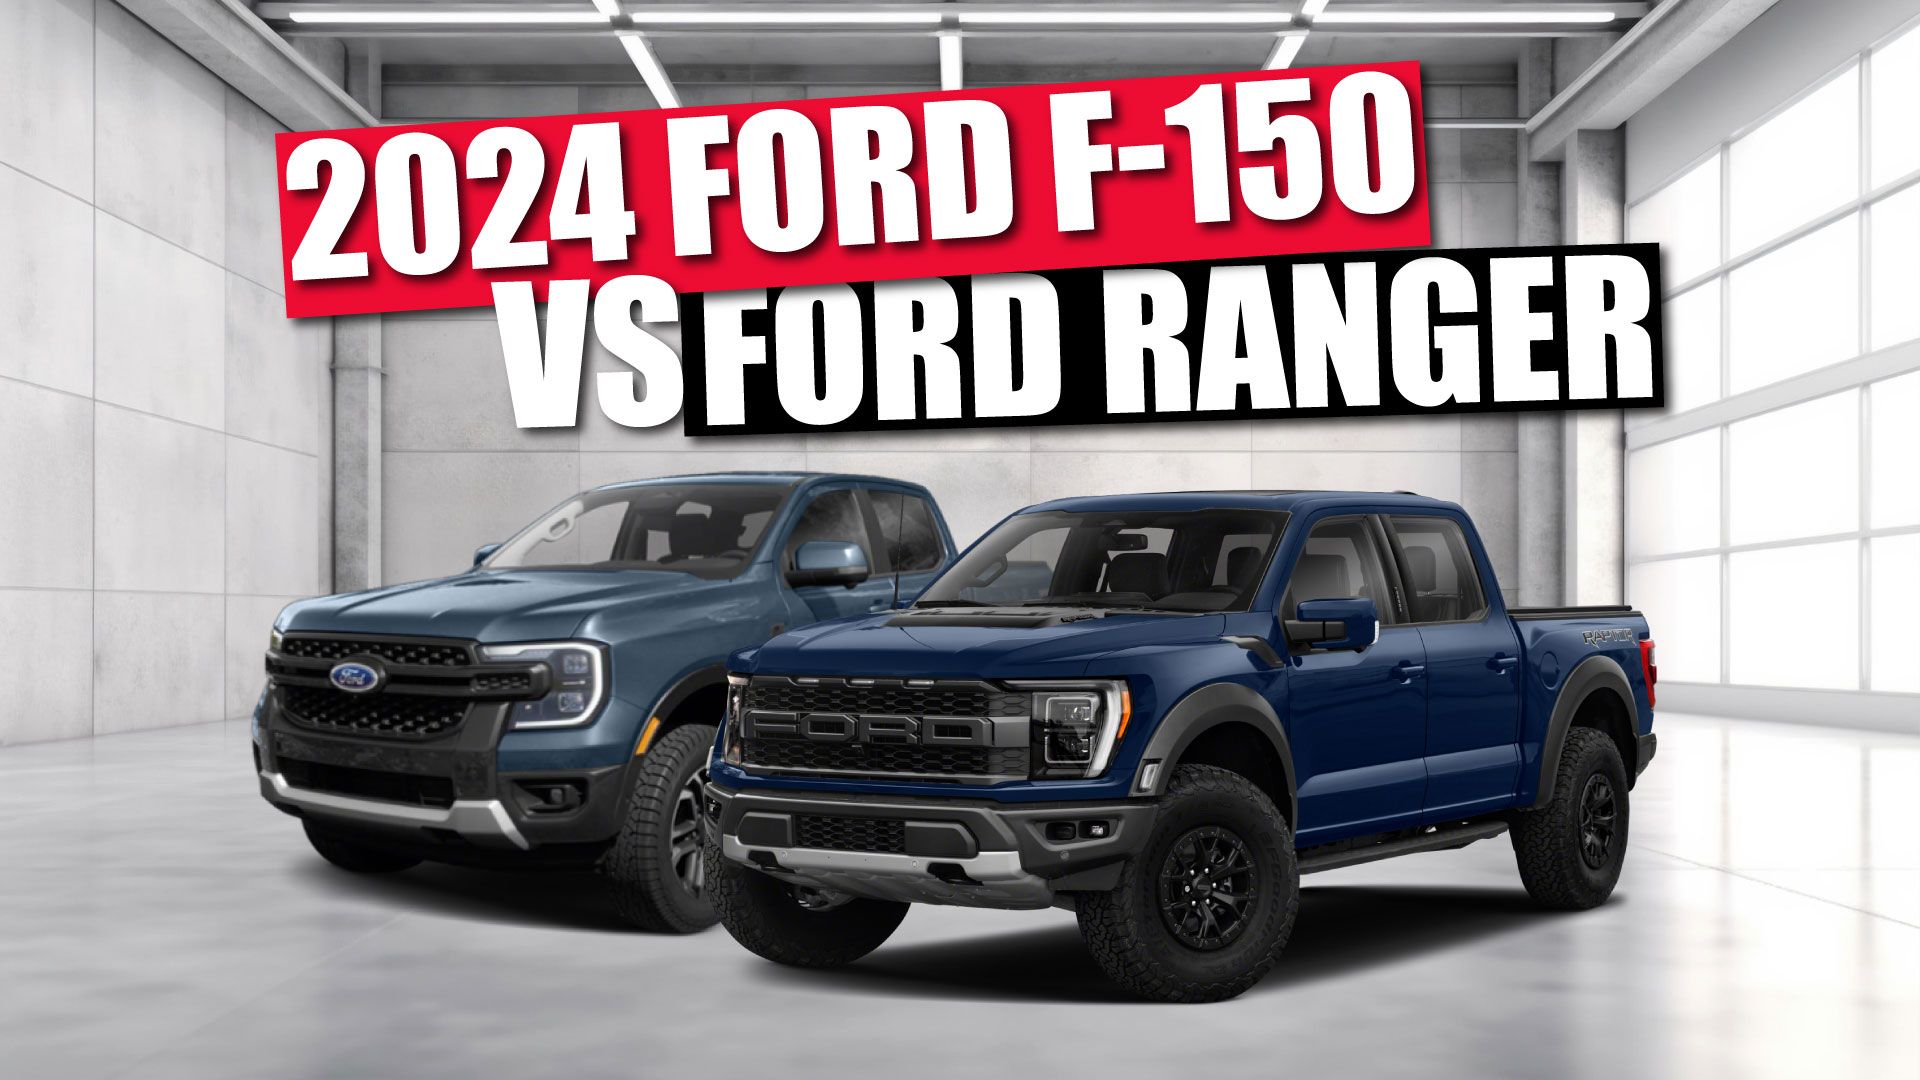 2024 Ford F-150 vs Ford Ranger